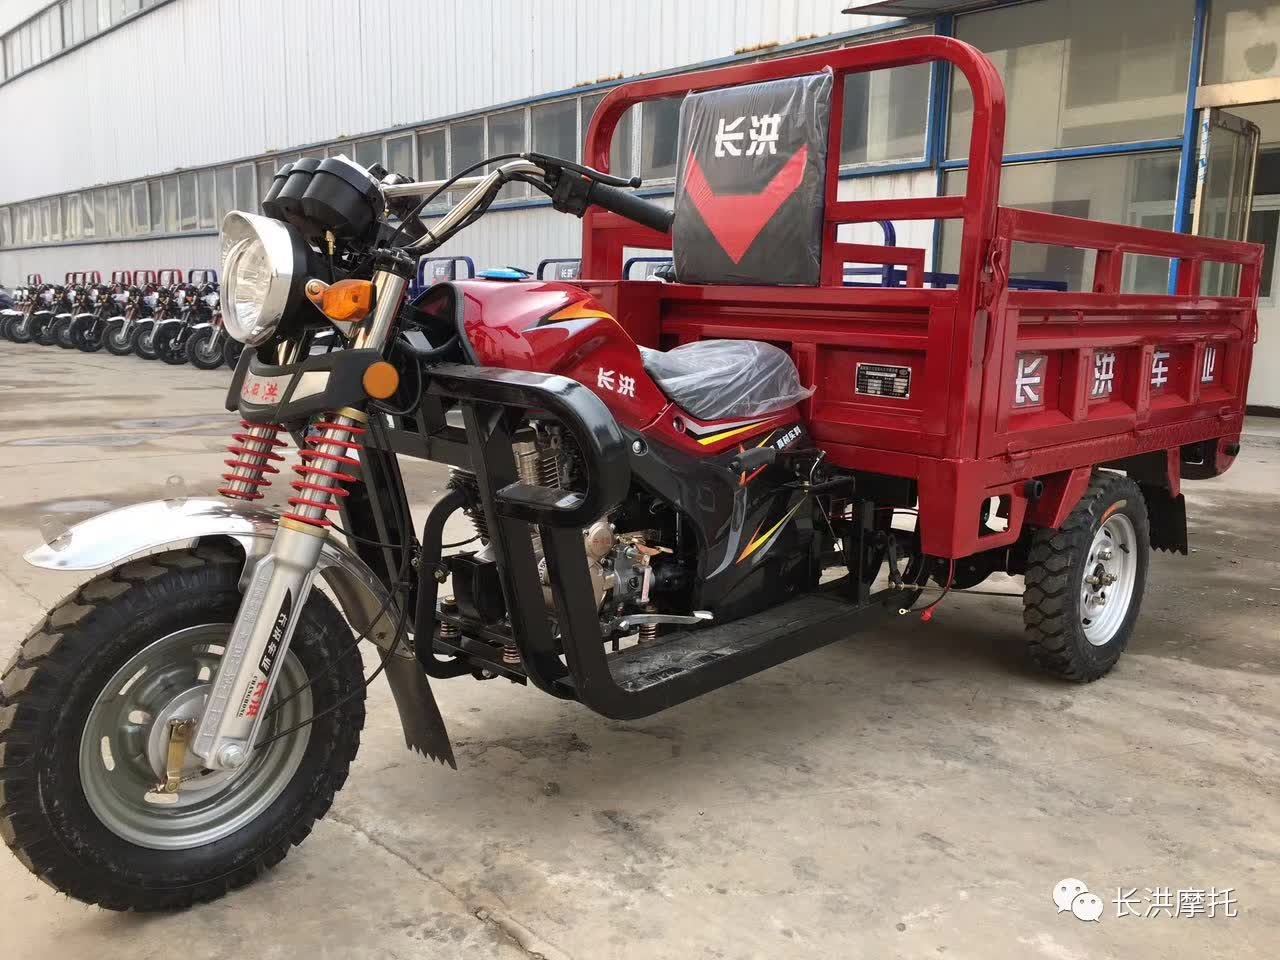 Changhong motorcycle H5